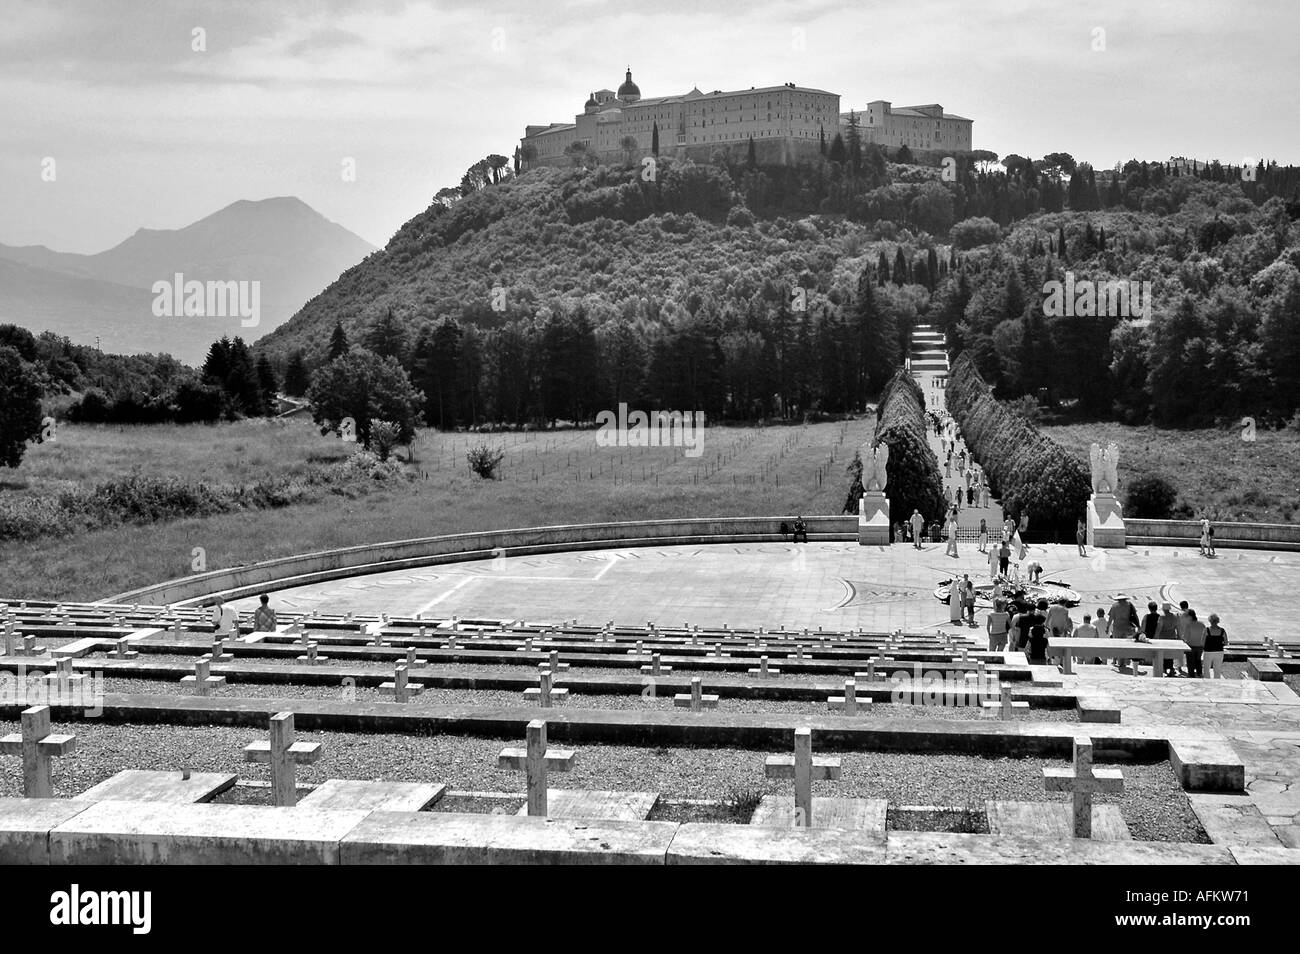 Cimetière de guerre polonais à Monte Cassino en Italie Abbazia l'Europe avec le monastère de Saint Benoît dans l'arrière-plan. Banque D'Images